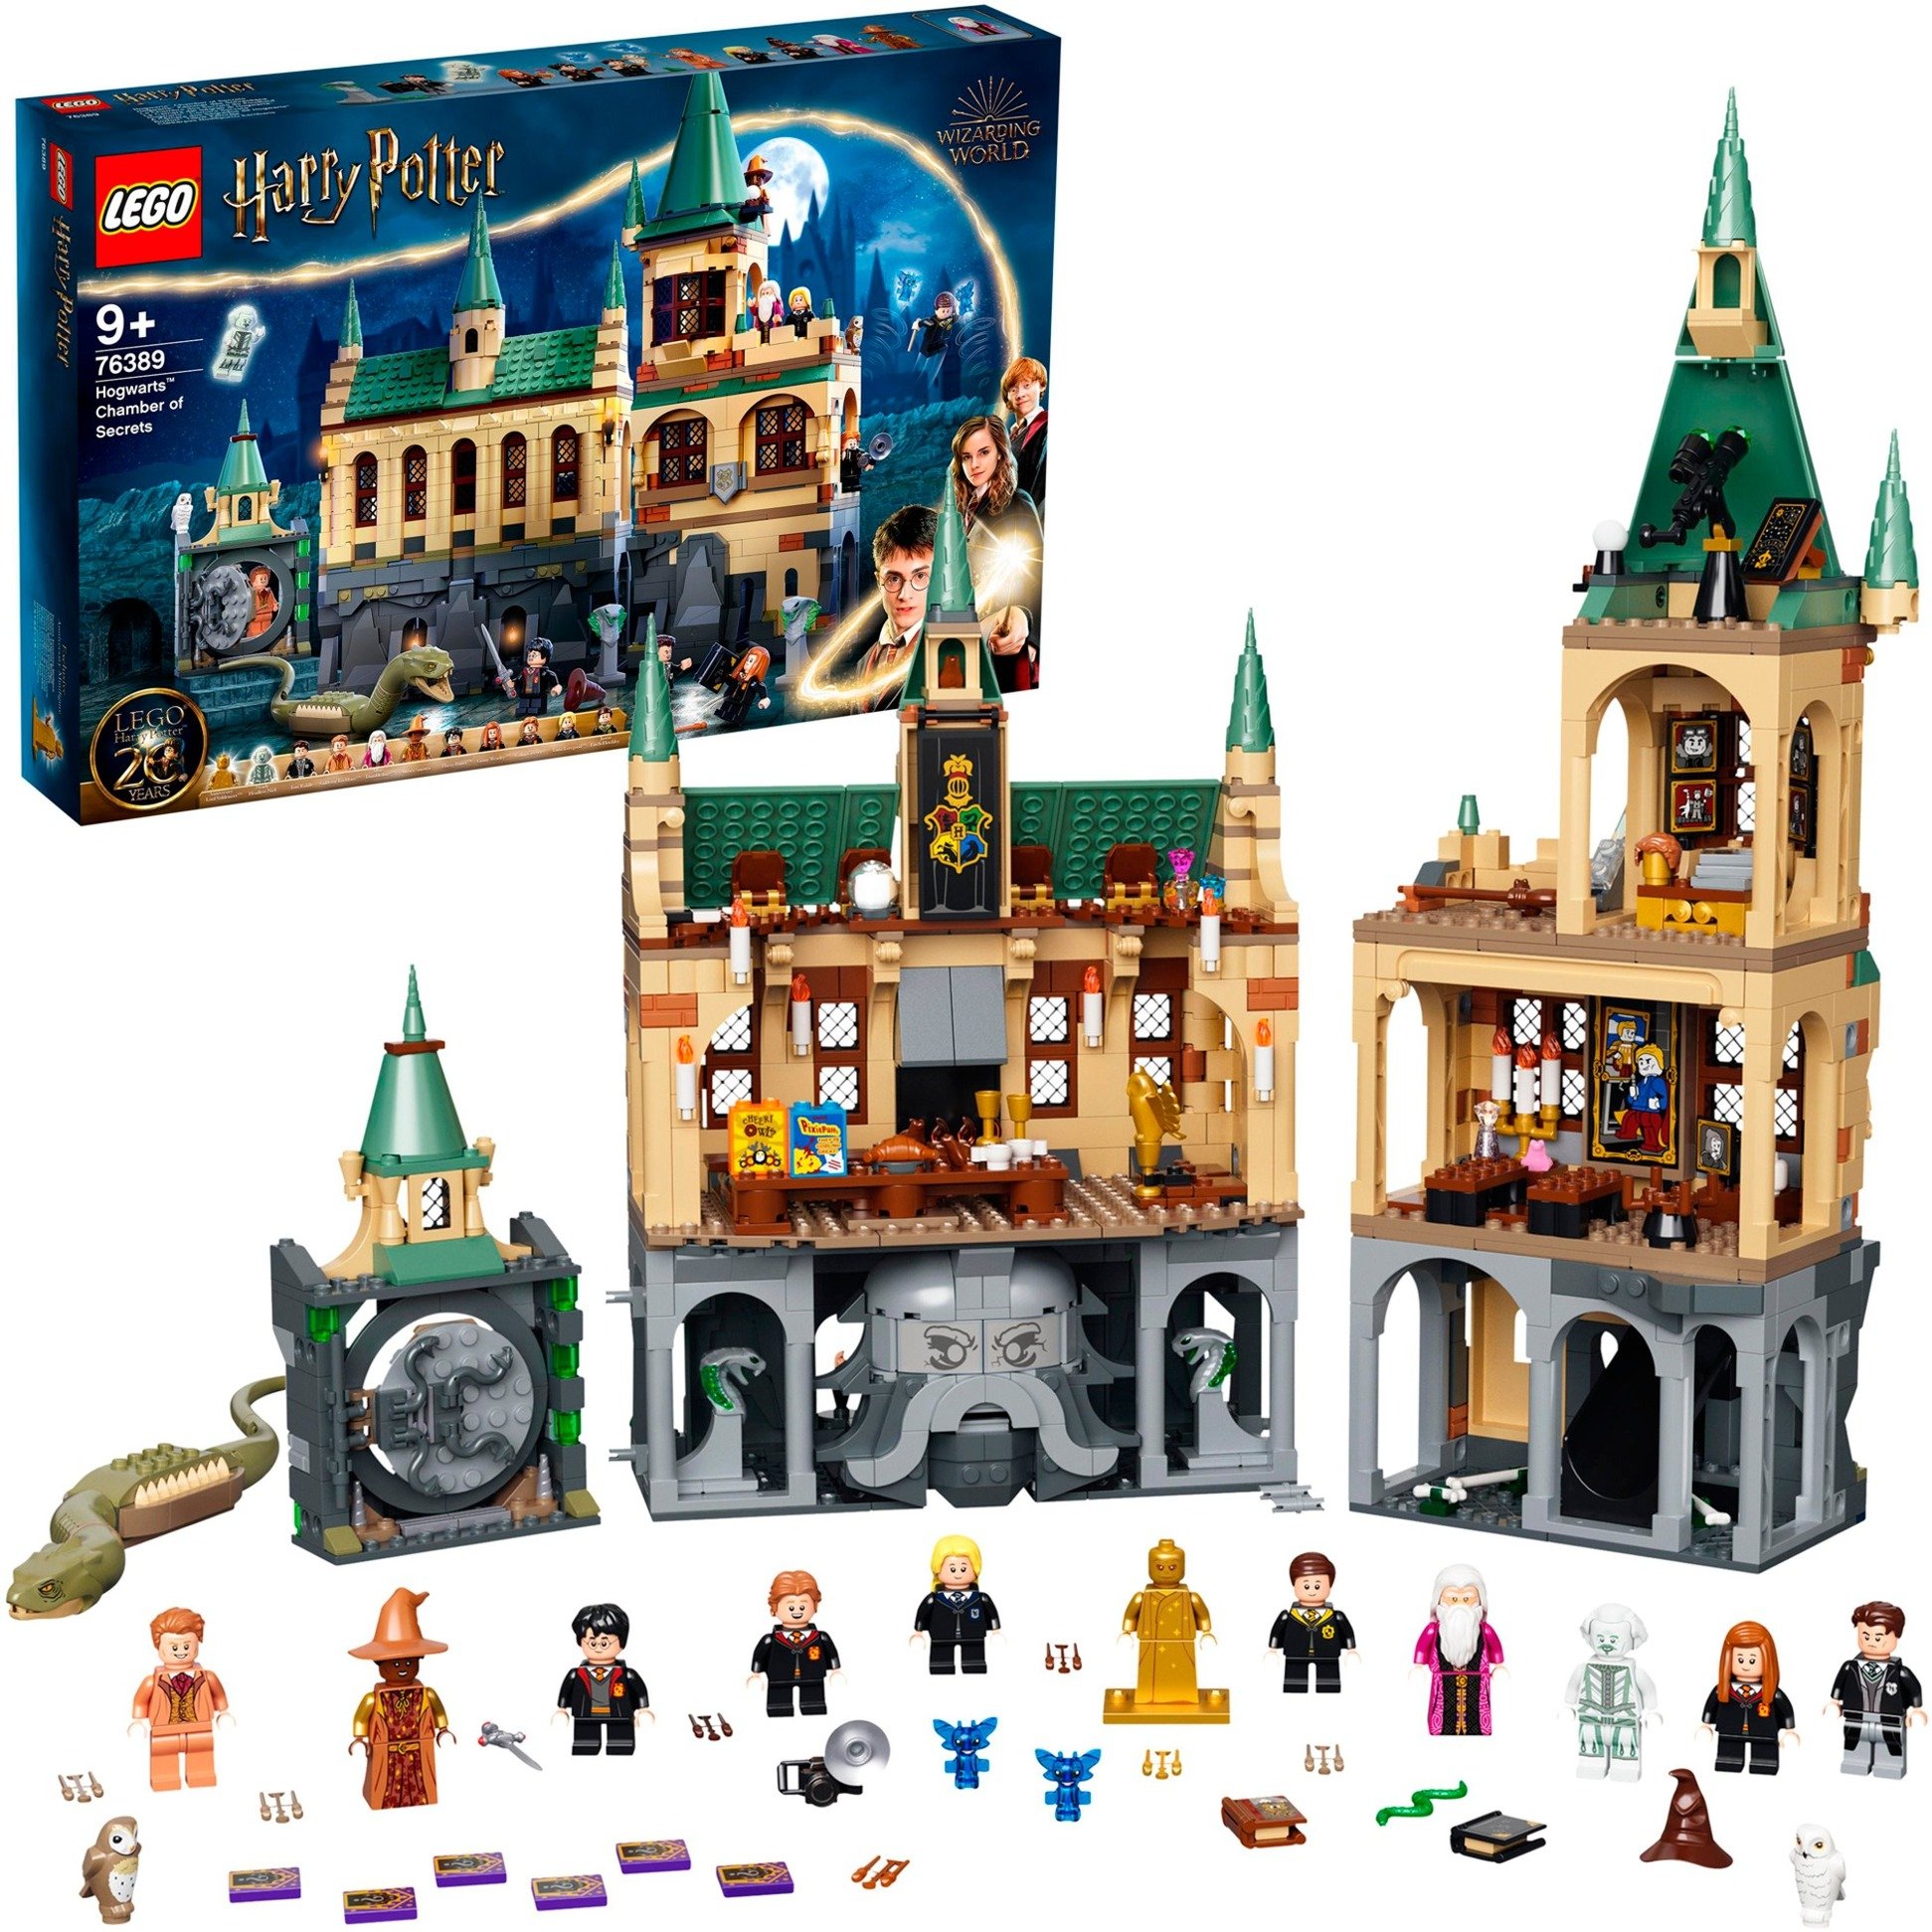 Spielzeug: Lego 76389 Harry Potter Hogwarts Kammer des Schreckens